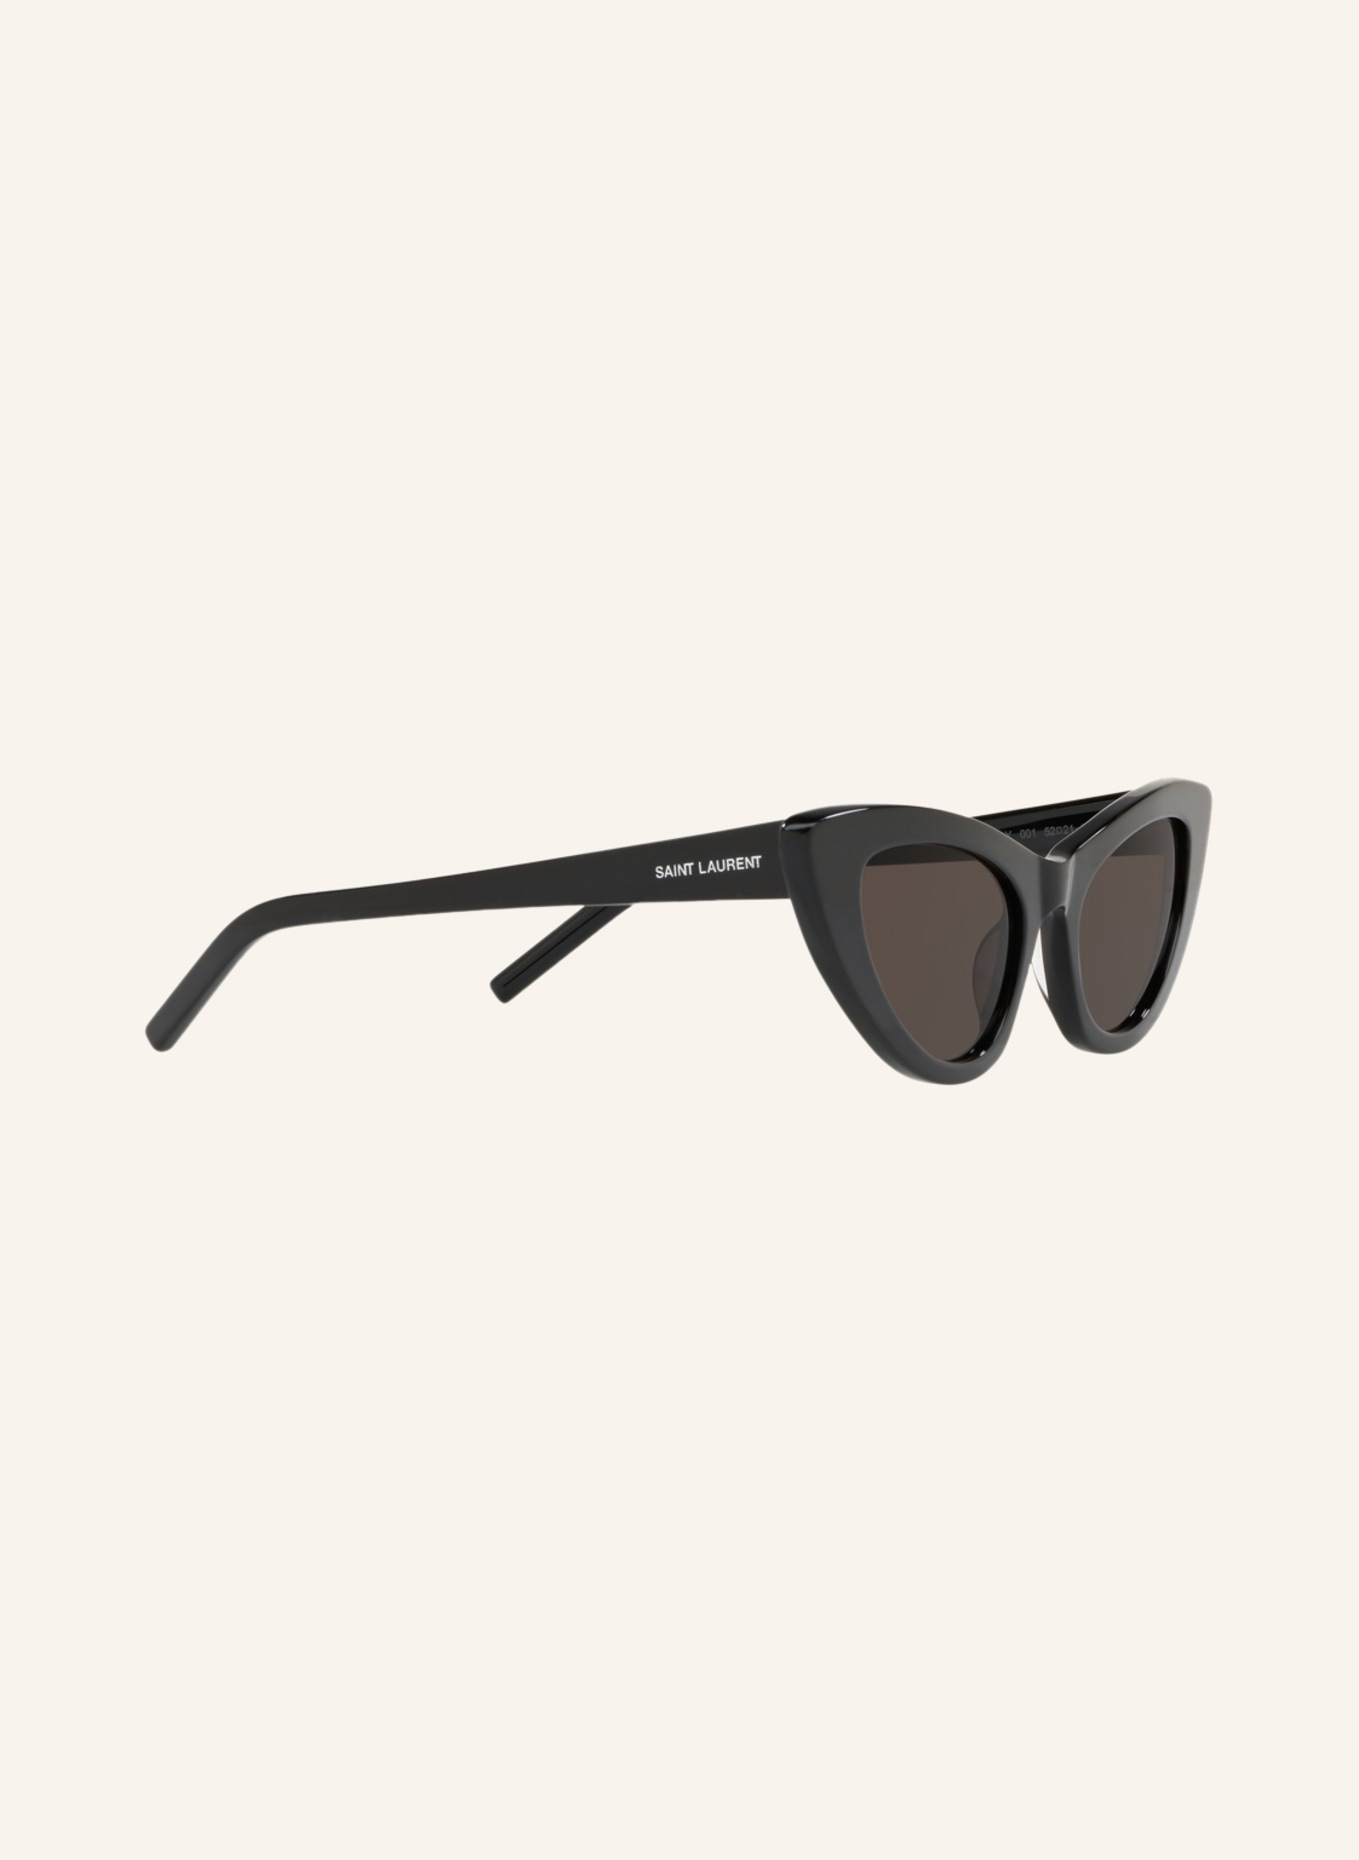 SAINT LAURENT Sunglasses SL 213 006, Color: 1330L1 - BLACK/ GRAY (Image 3)